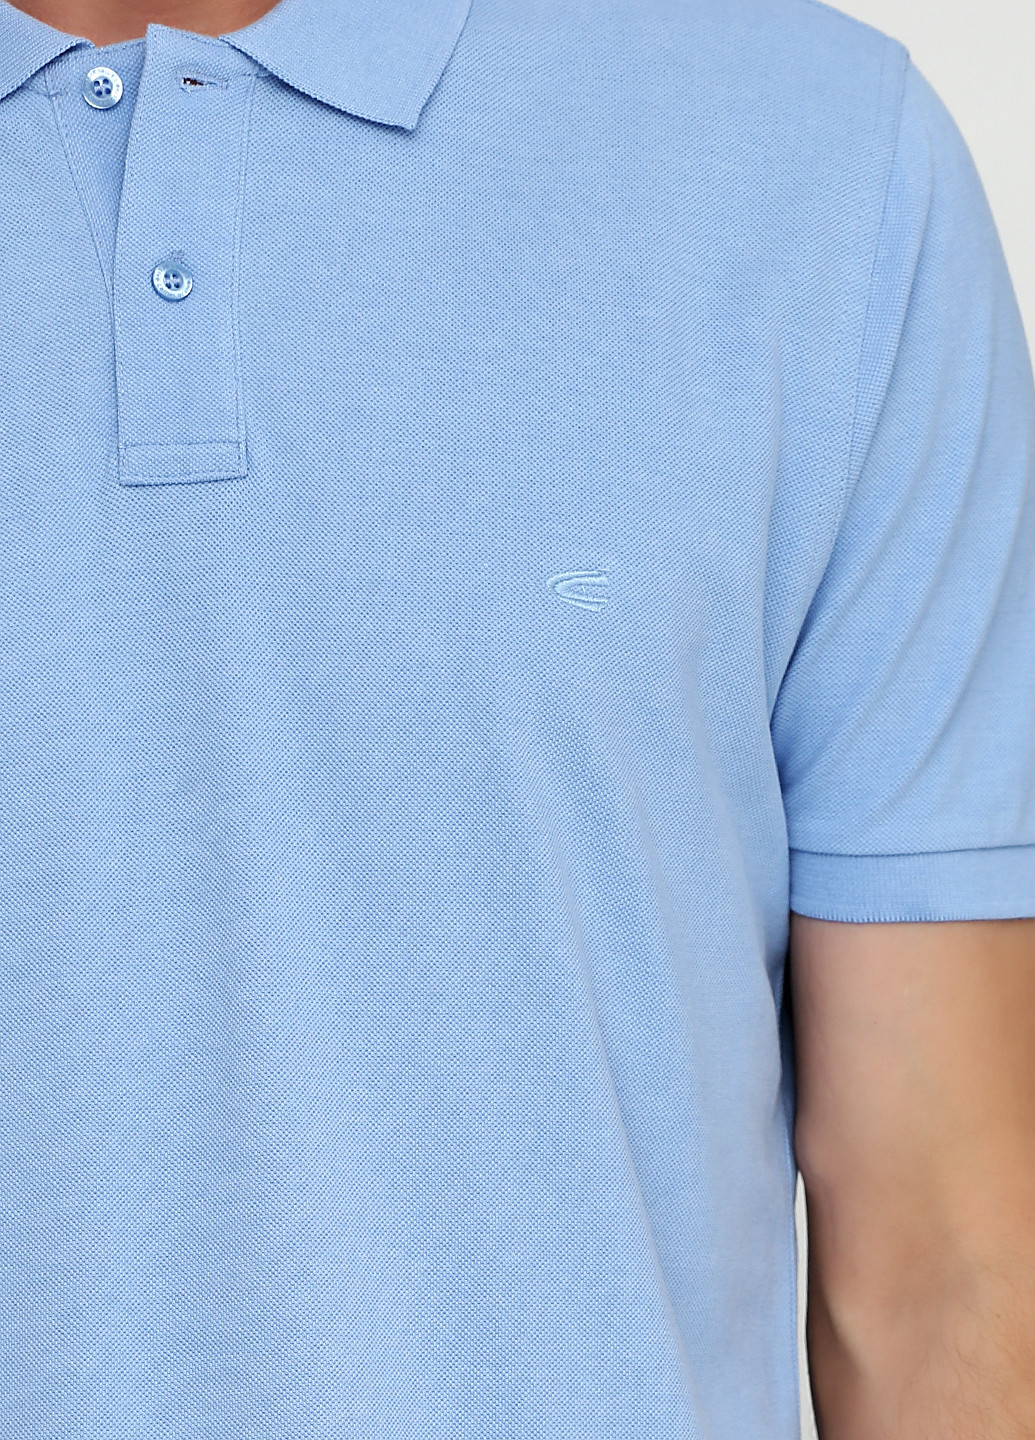 Голубой футболка-поло для мужчин Camel Active однотонная